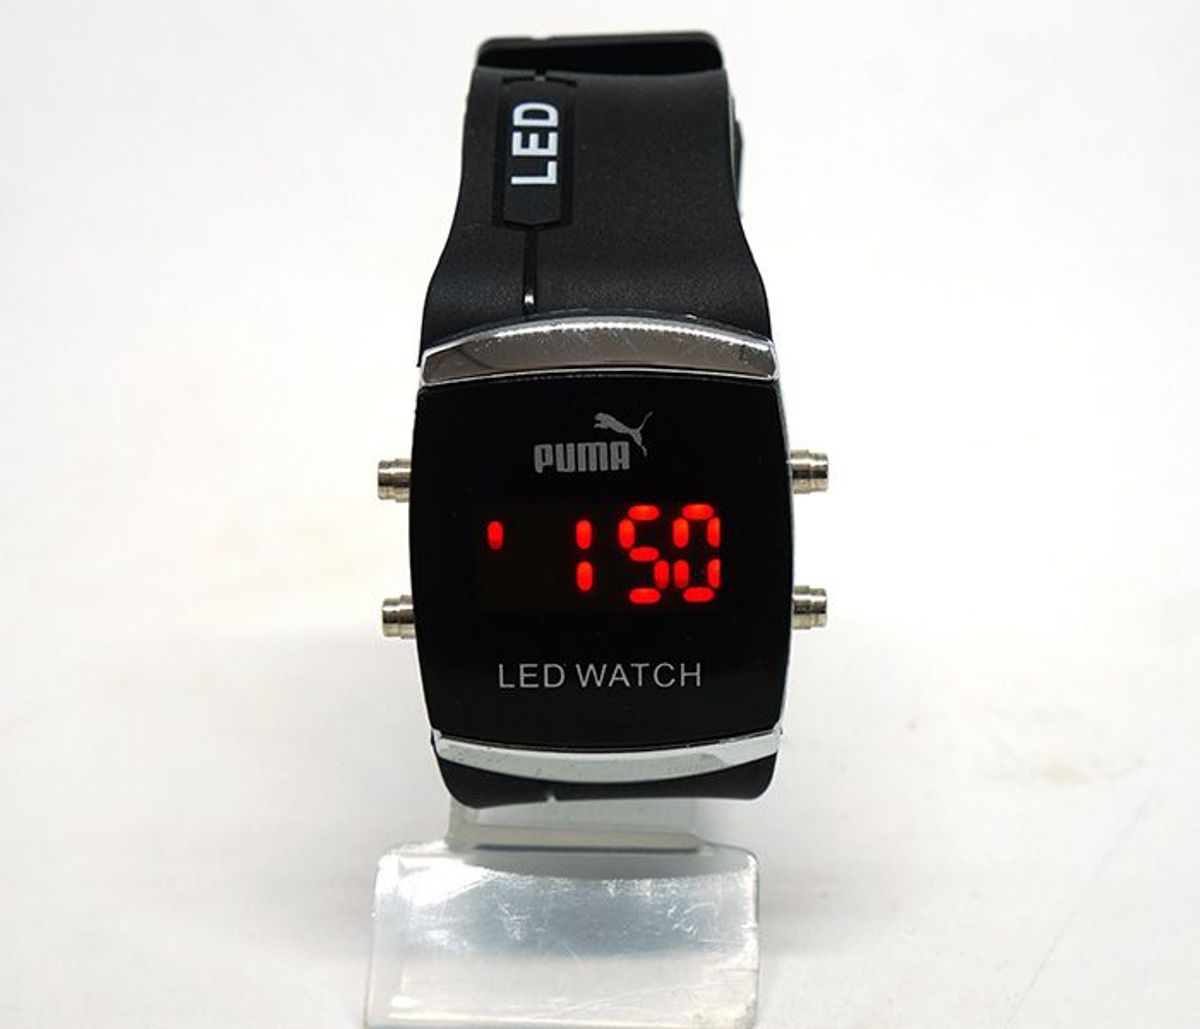 relogio puma led watch original preço